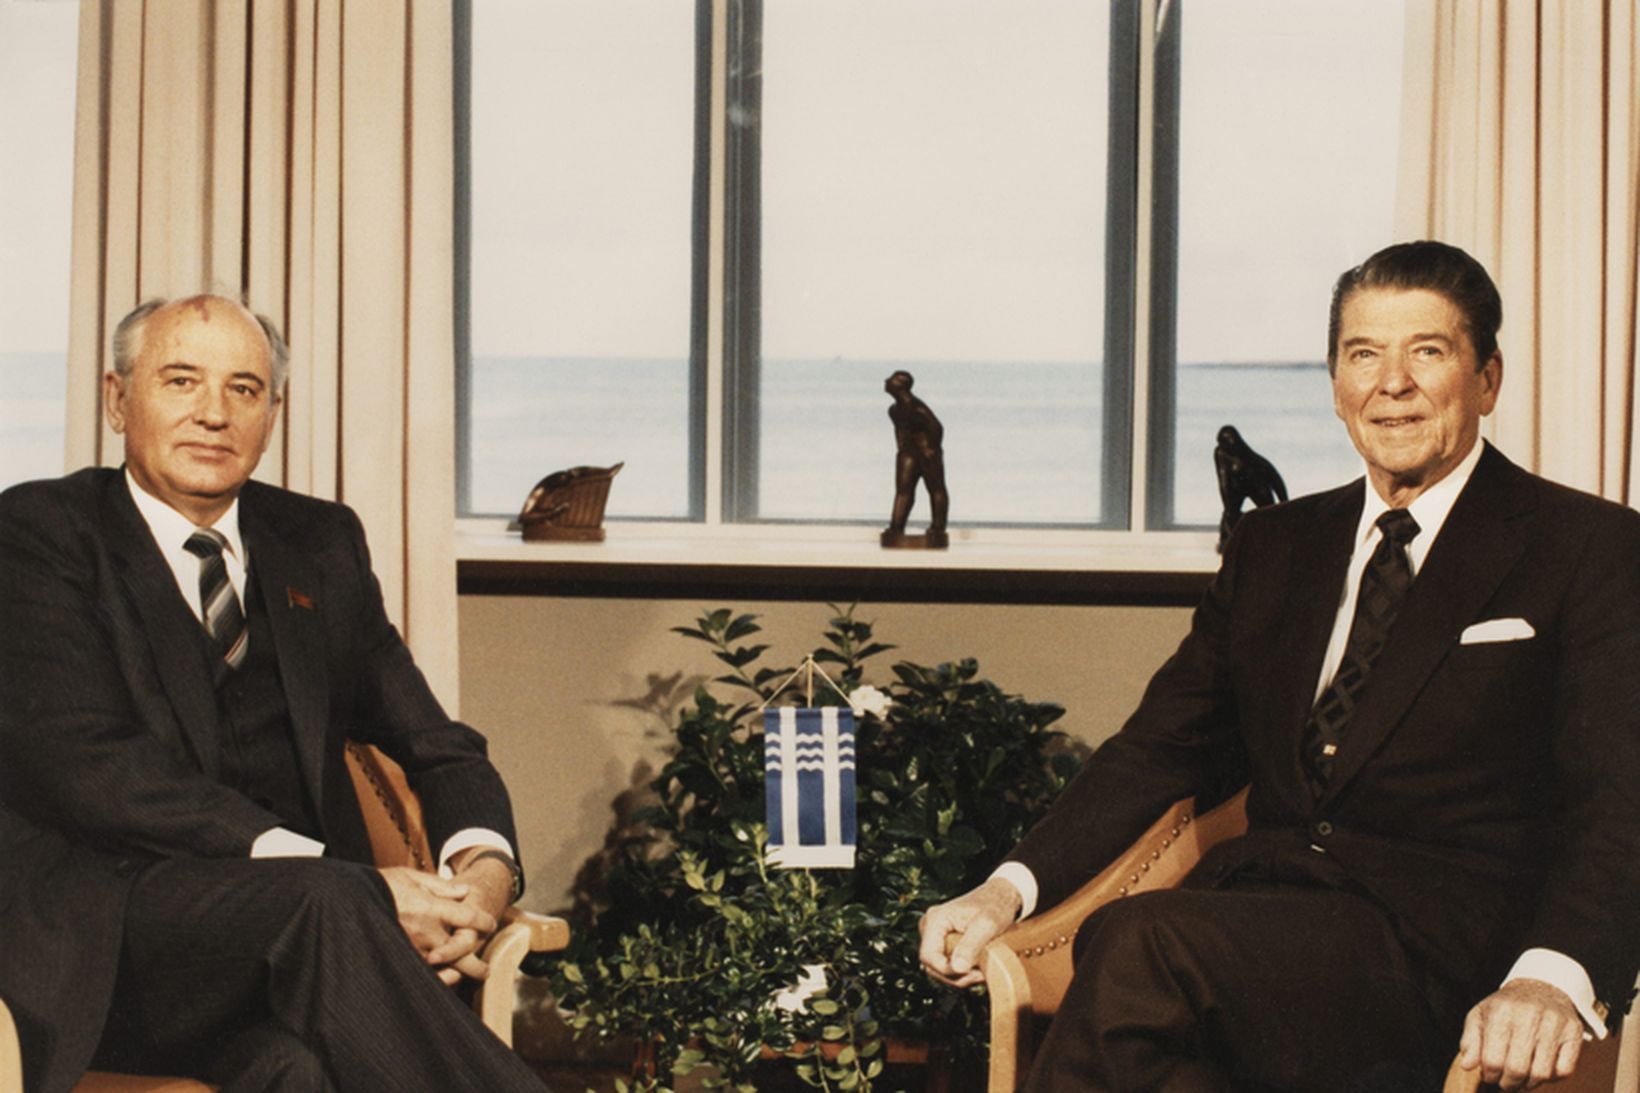 Mikaíl Gorbachev, leiðtogi Sovétríkjanna, og Ronald Reagan, forseti Bandaríkjanna, á …